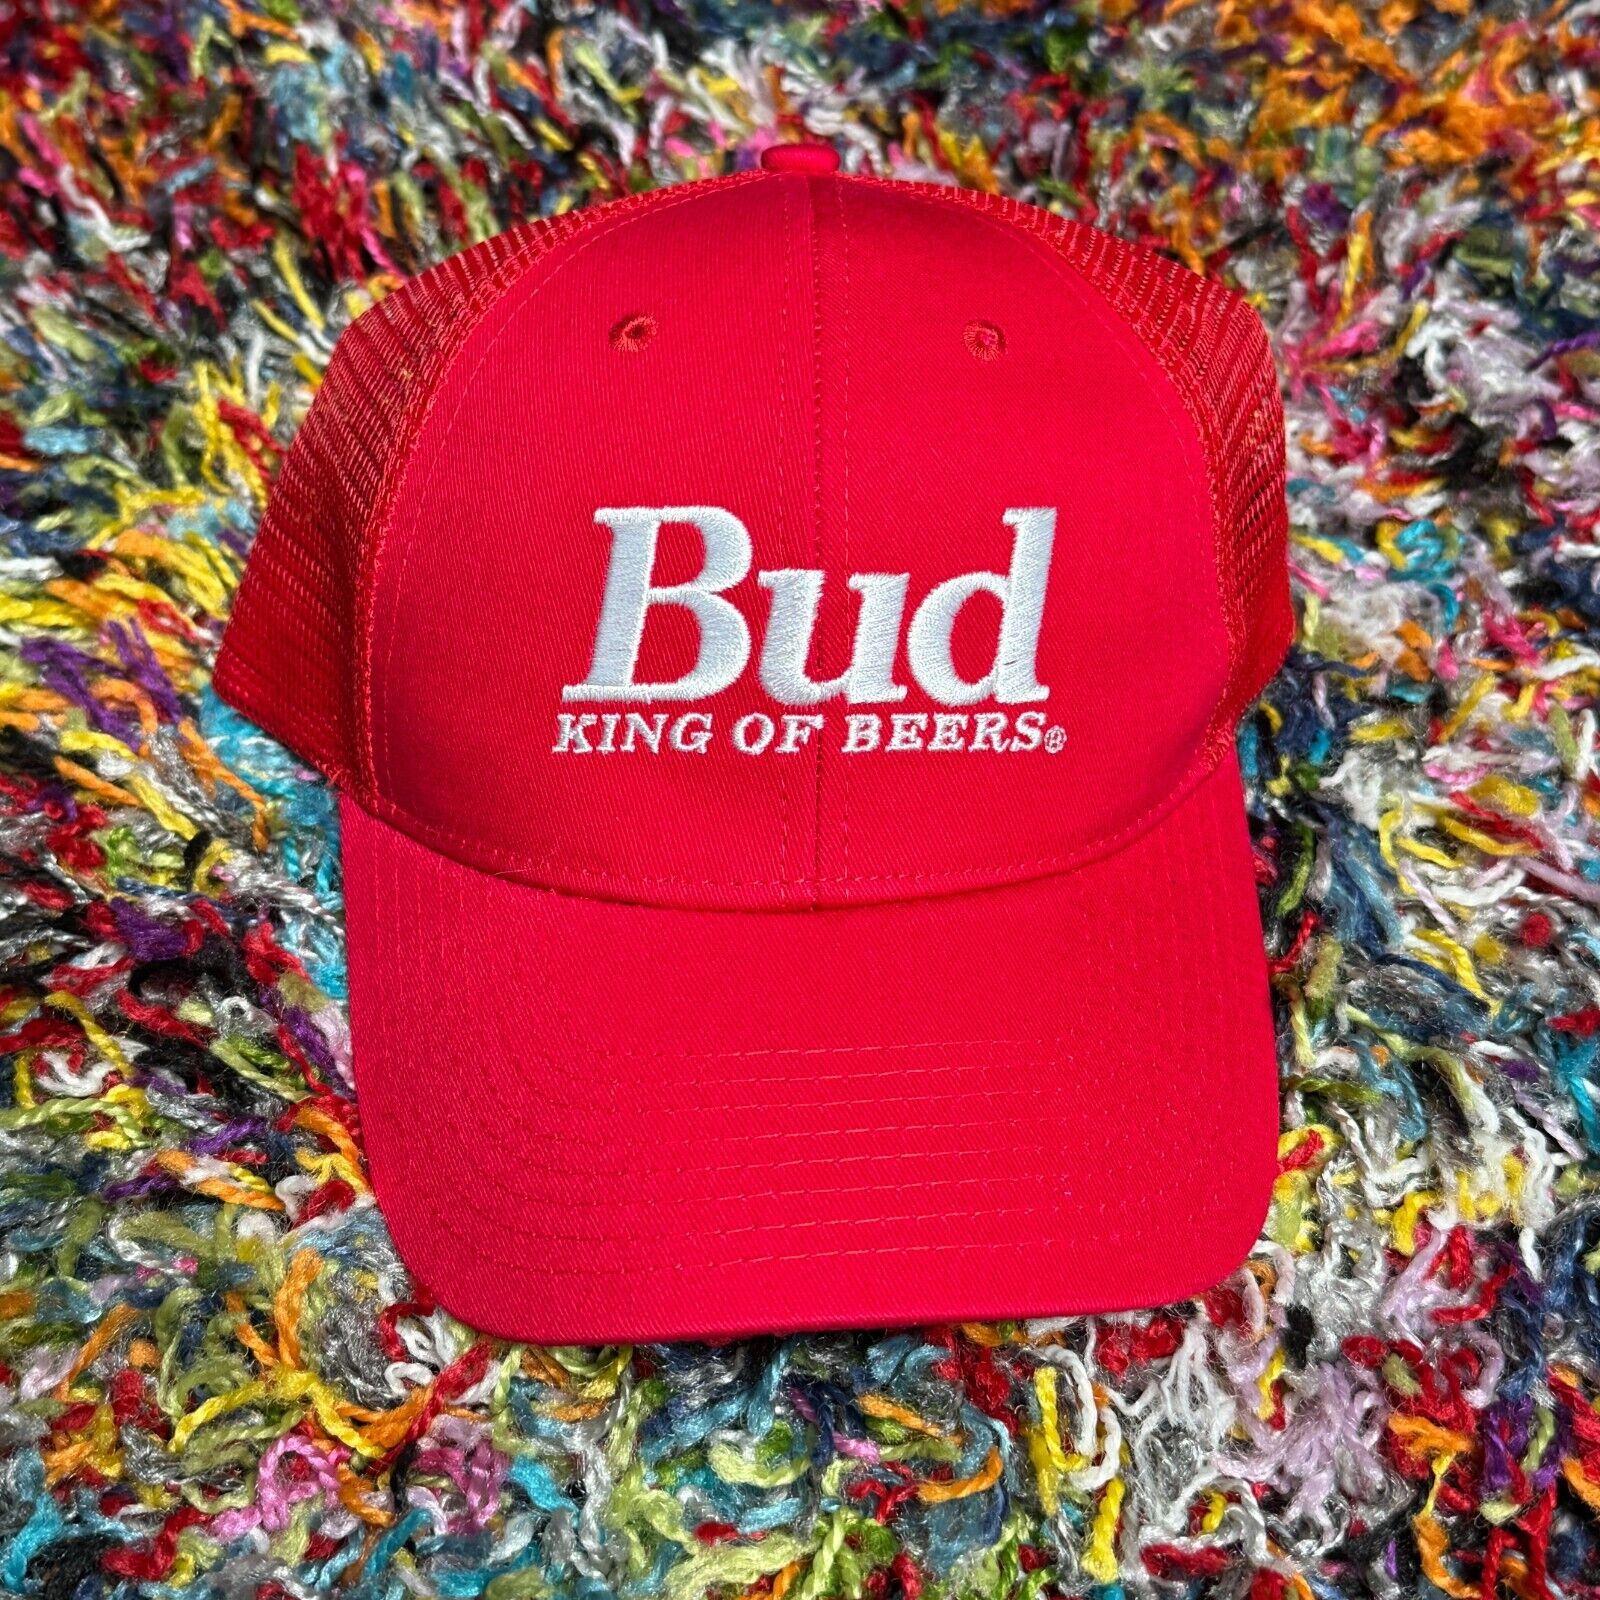 BUD KING OF BEERS Red Vintage Trucker Snapback Hat Cap NWOT Dad Cap